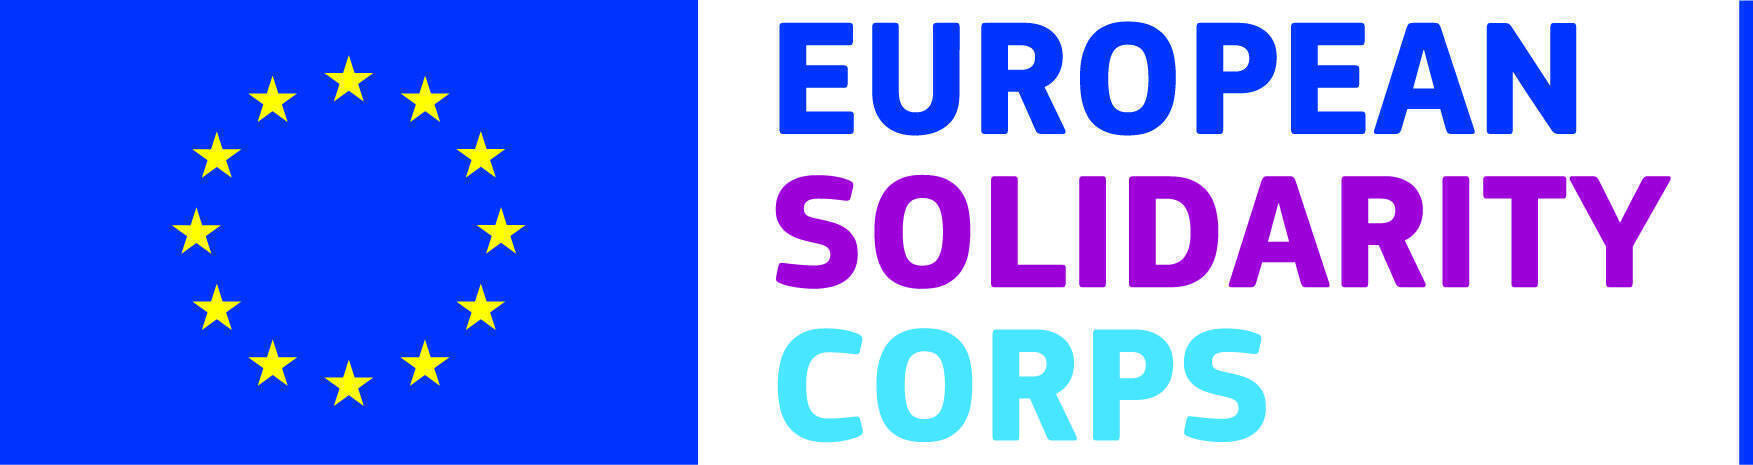 en european solidarity corps logo